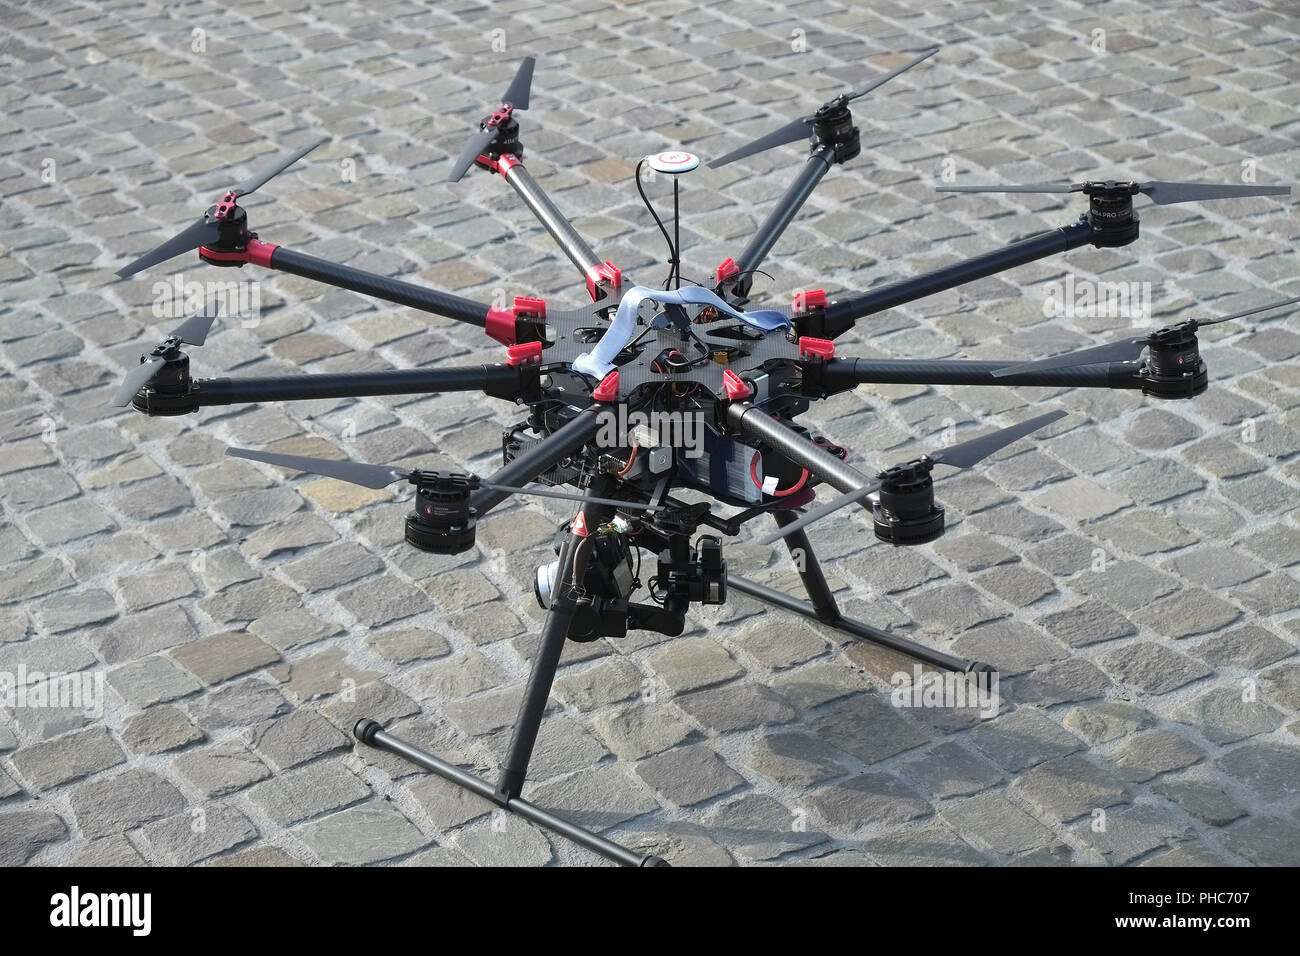 Octocopter drone immagini e fotografie stock ad alta risoluzione - Alamy